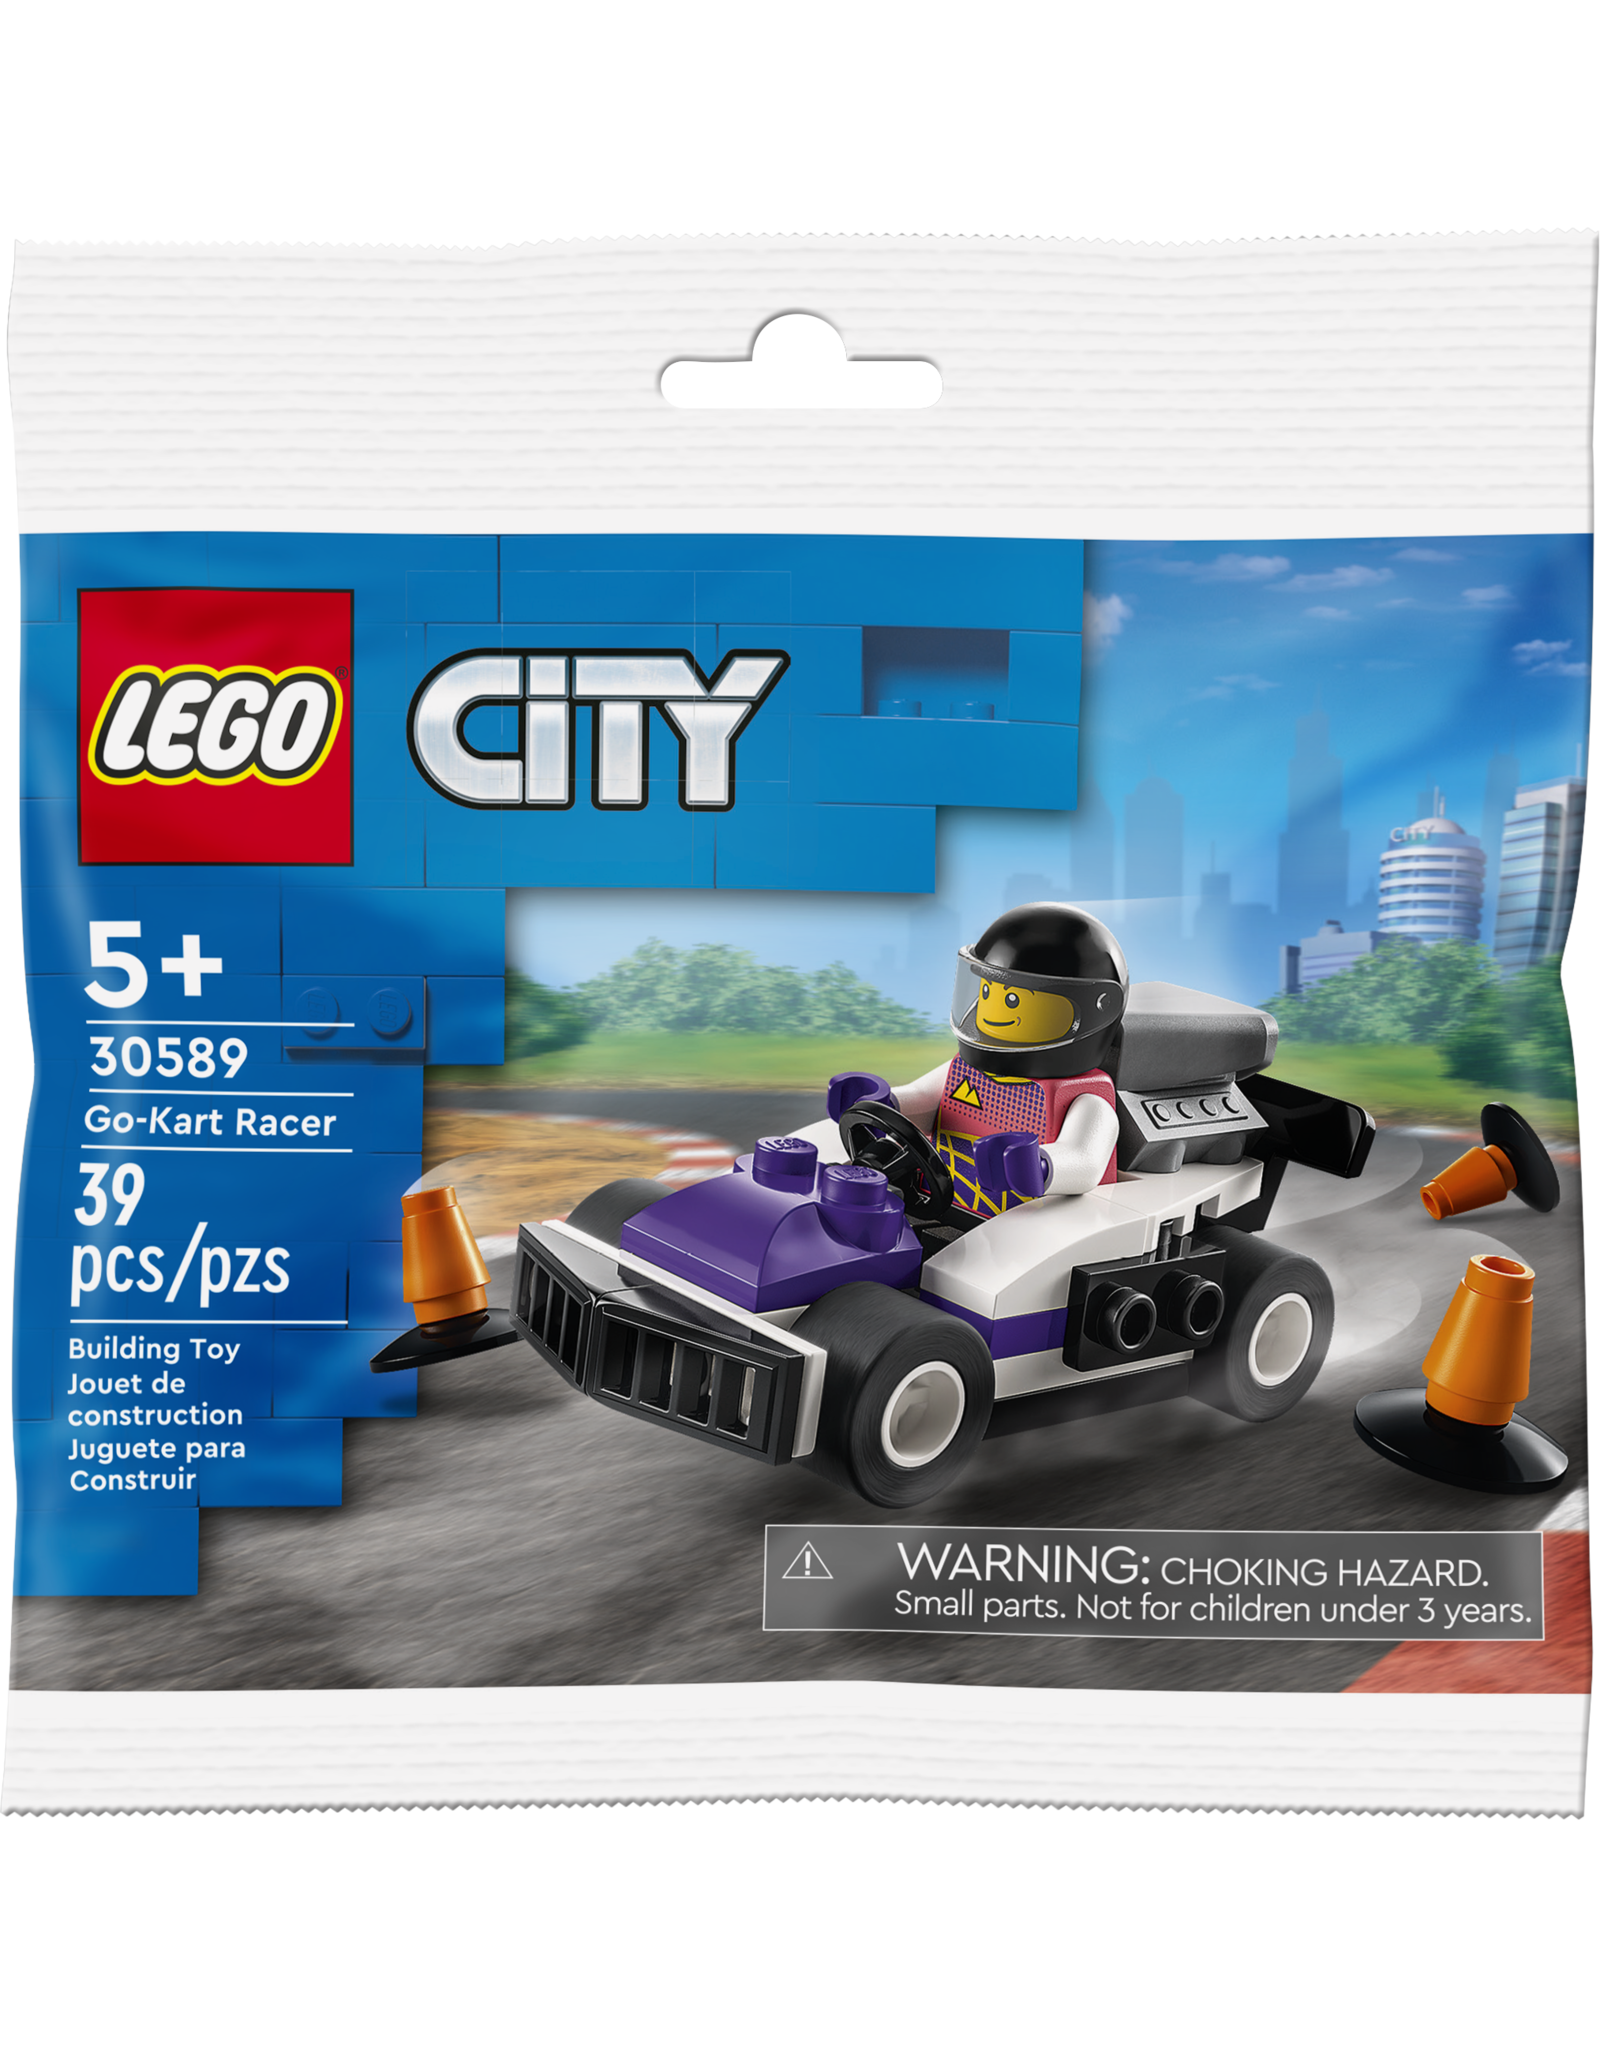 LEGO City 30589 Go-Kart Racer